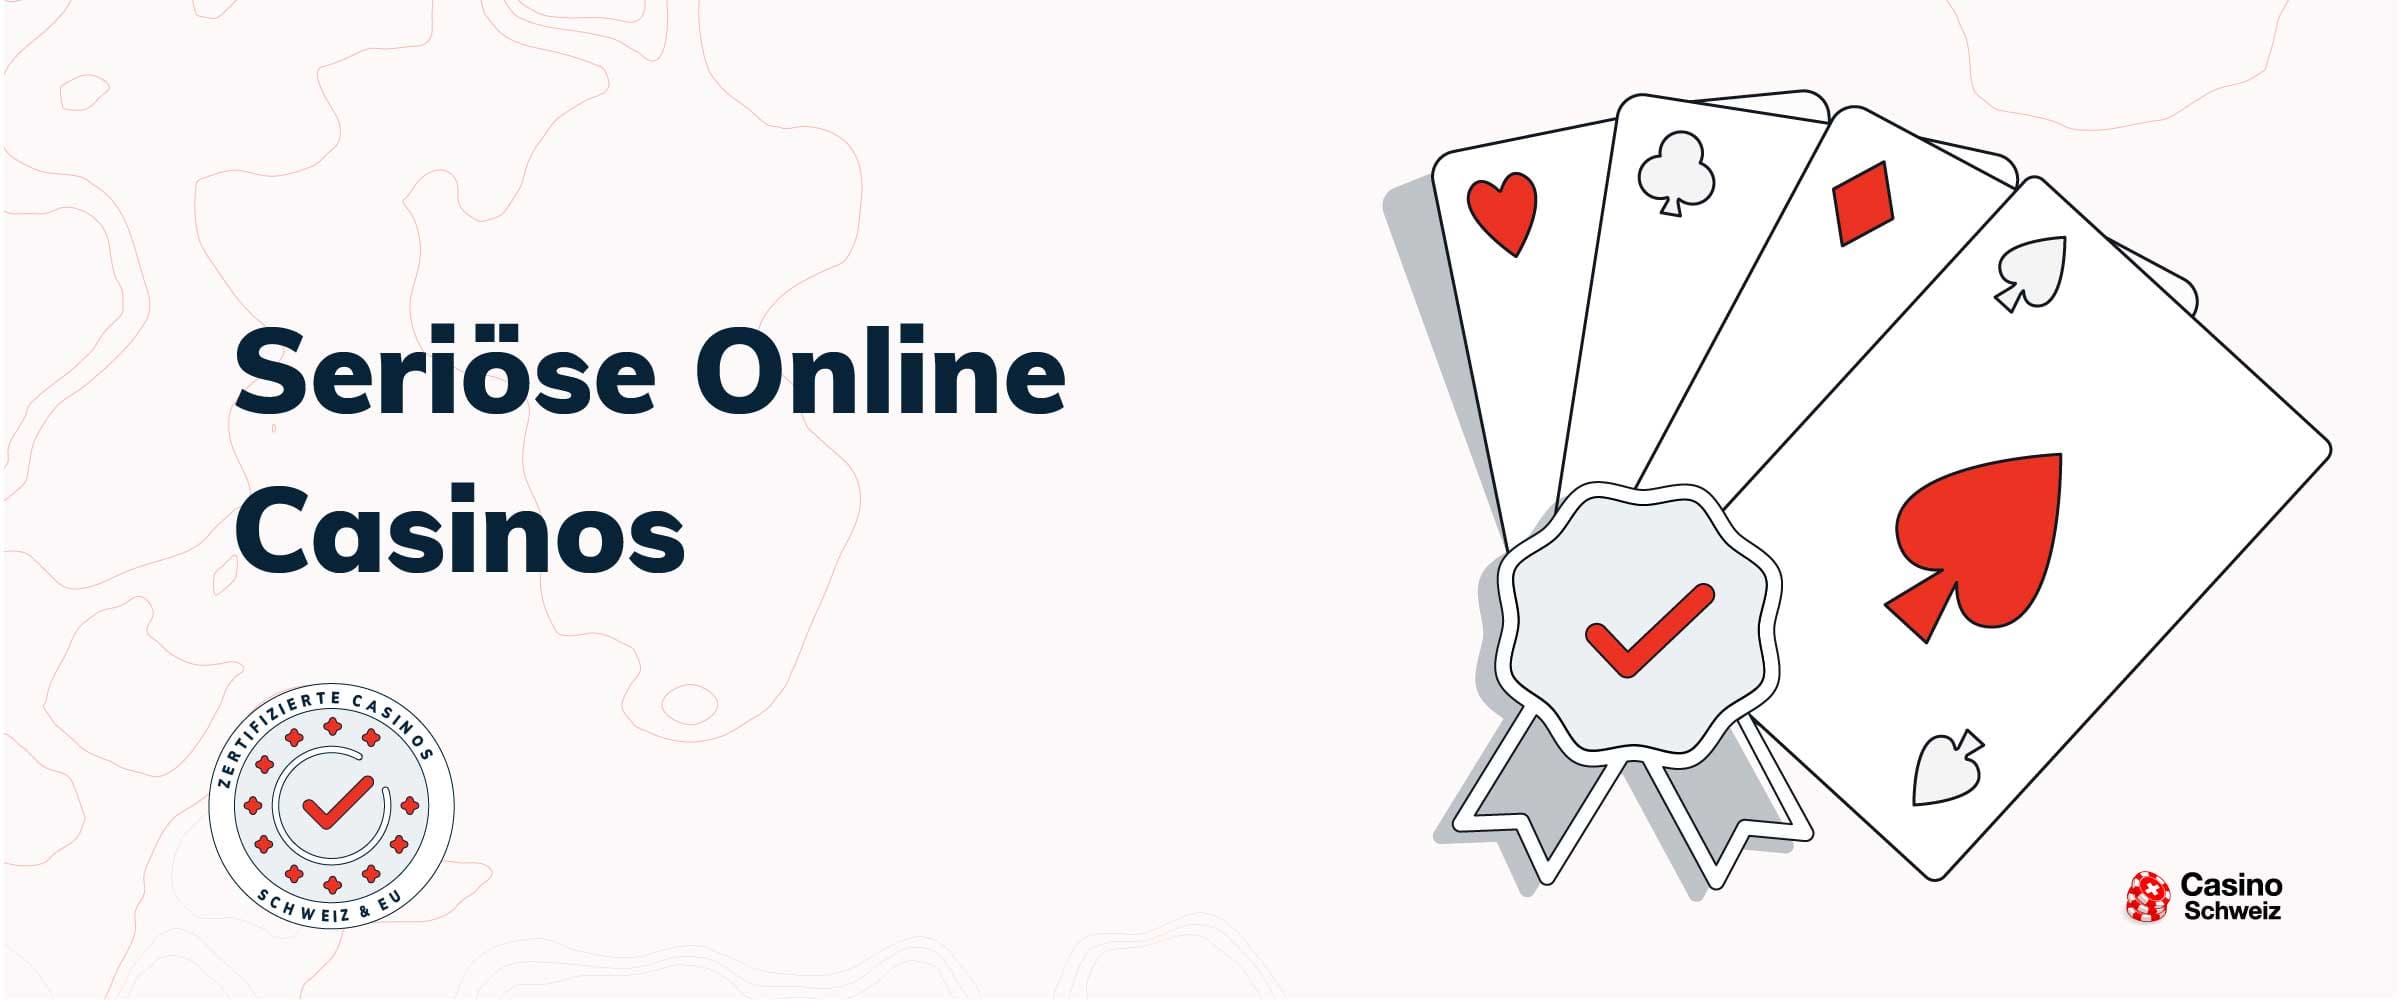 Wenn Profis Probleme mit new Online Casino haben, tun sie dies